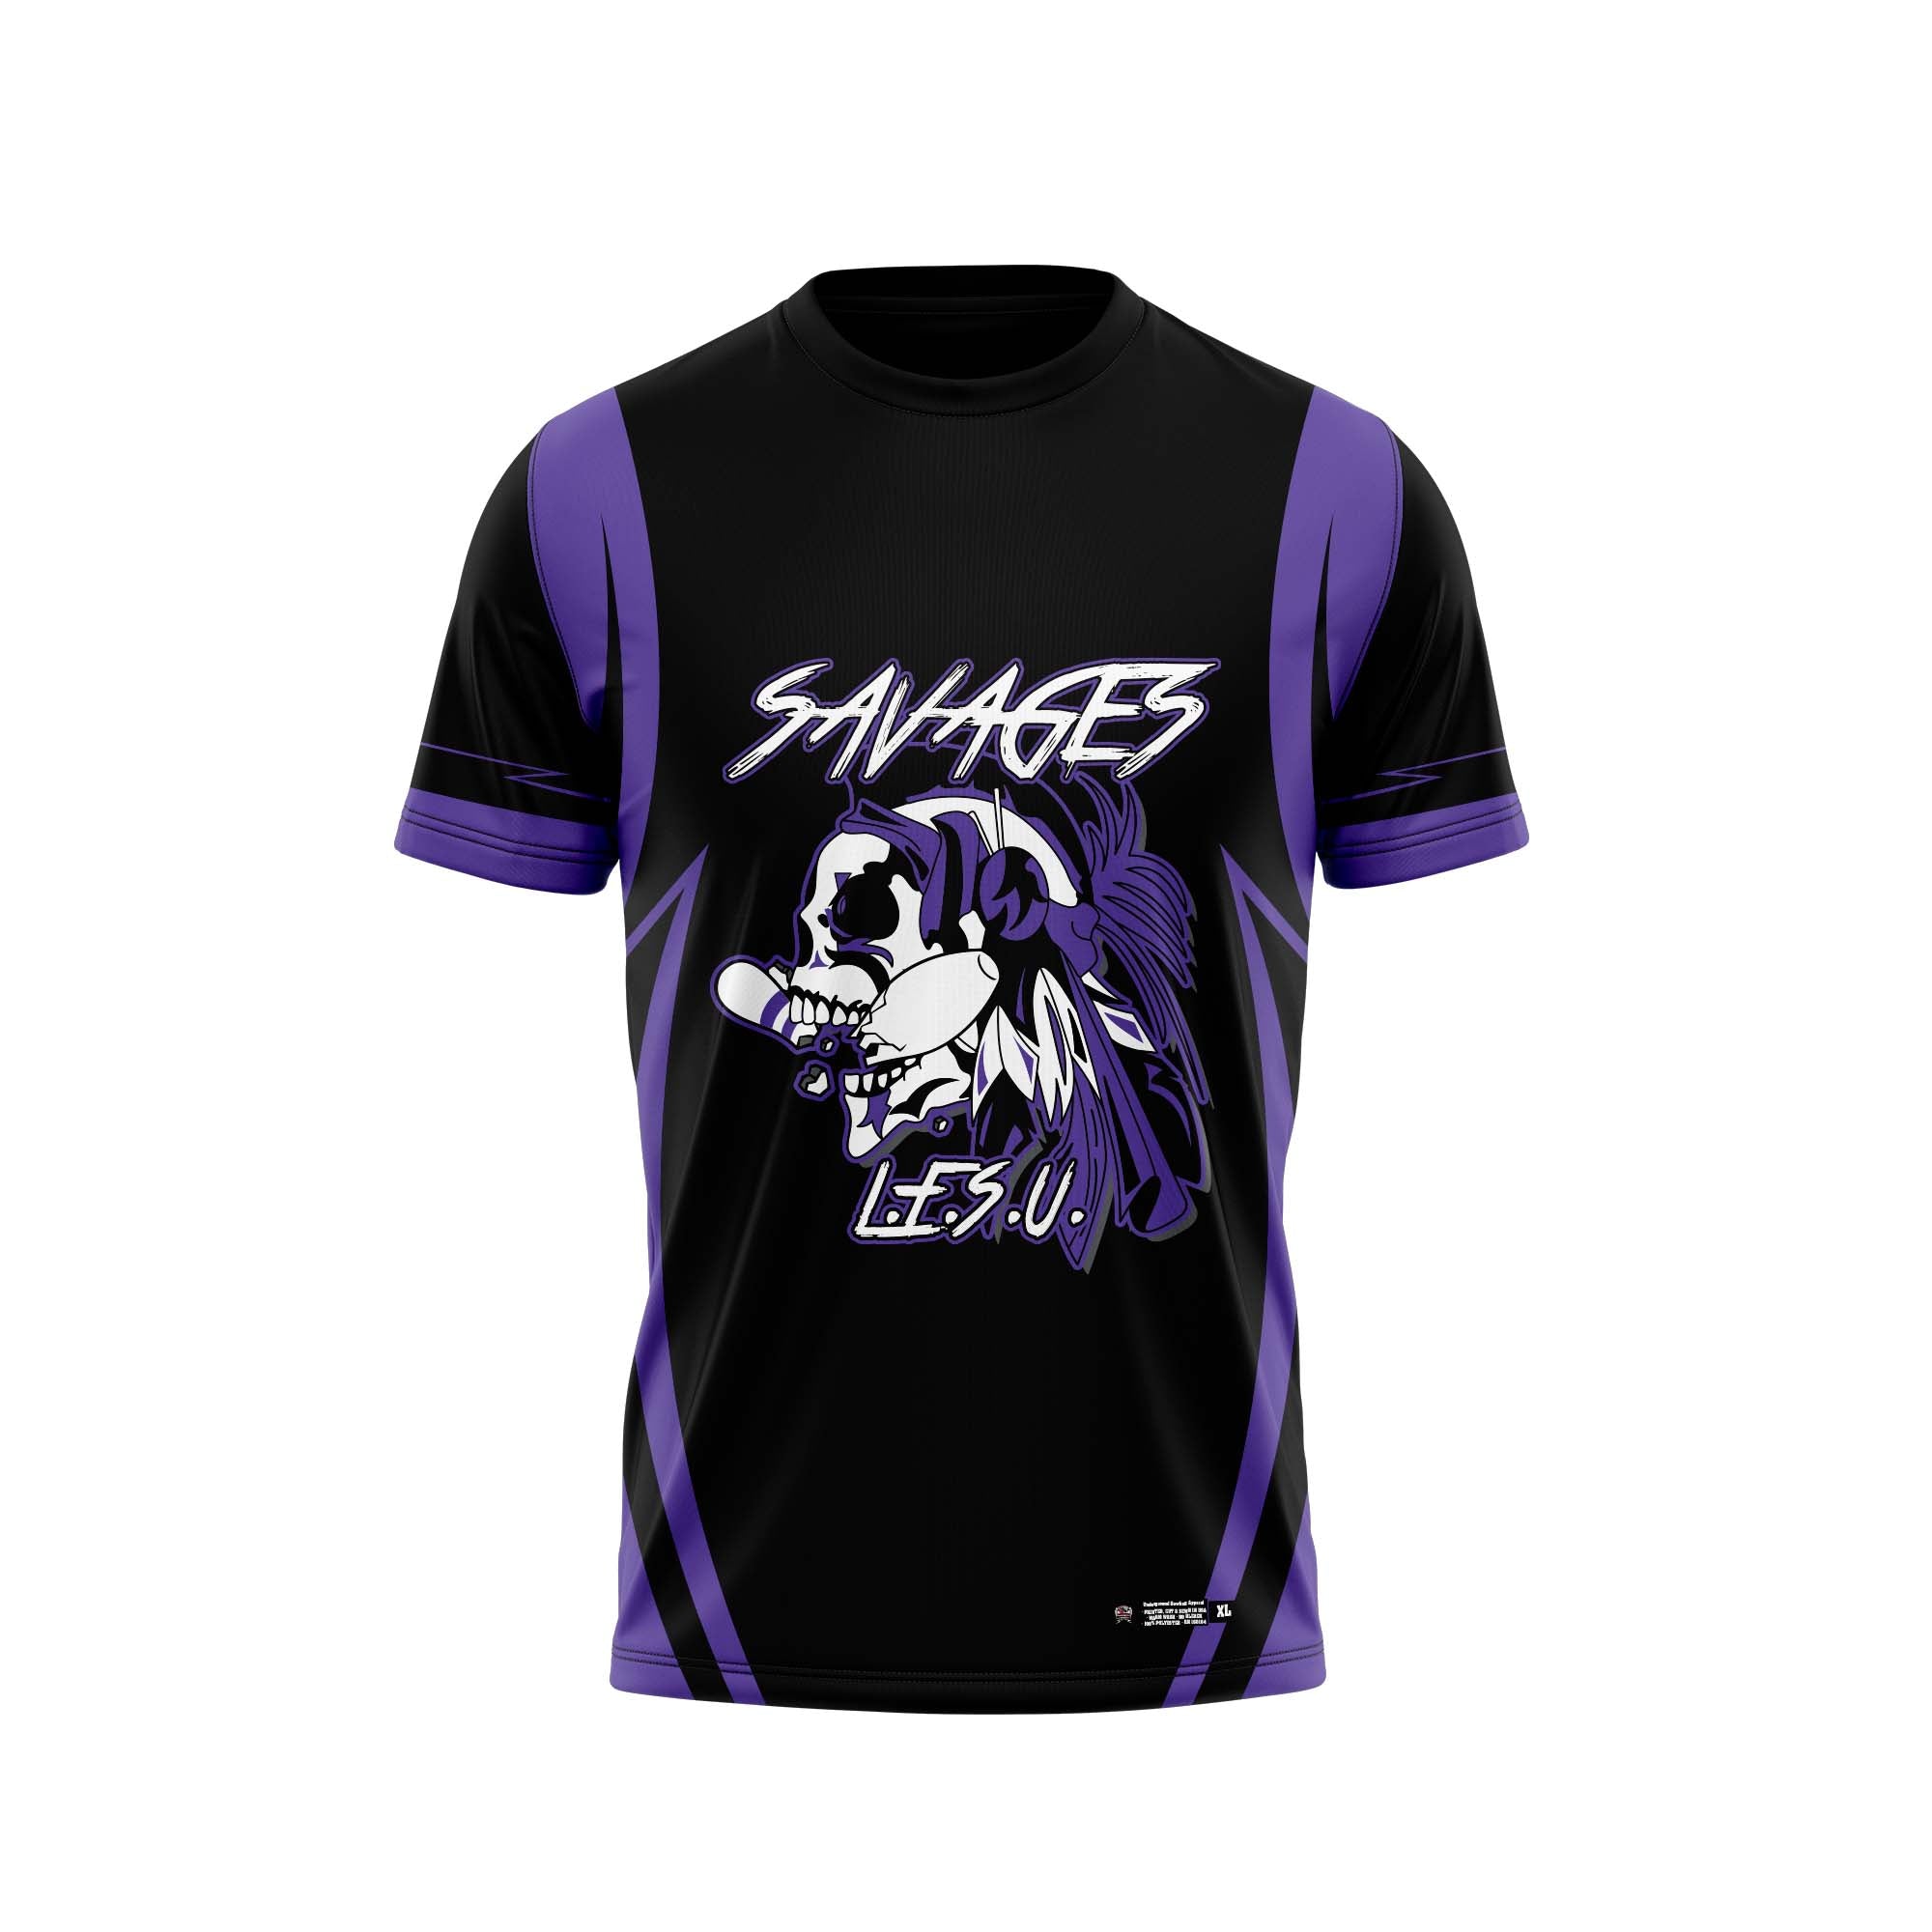 Spartanburg Savages Black Purple Jersey